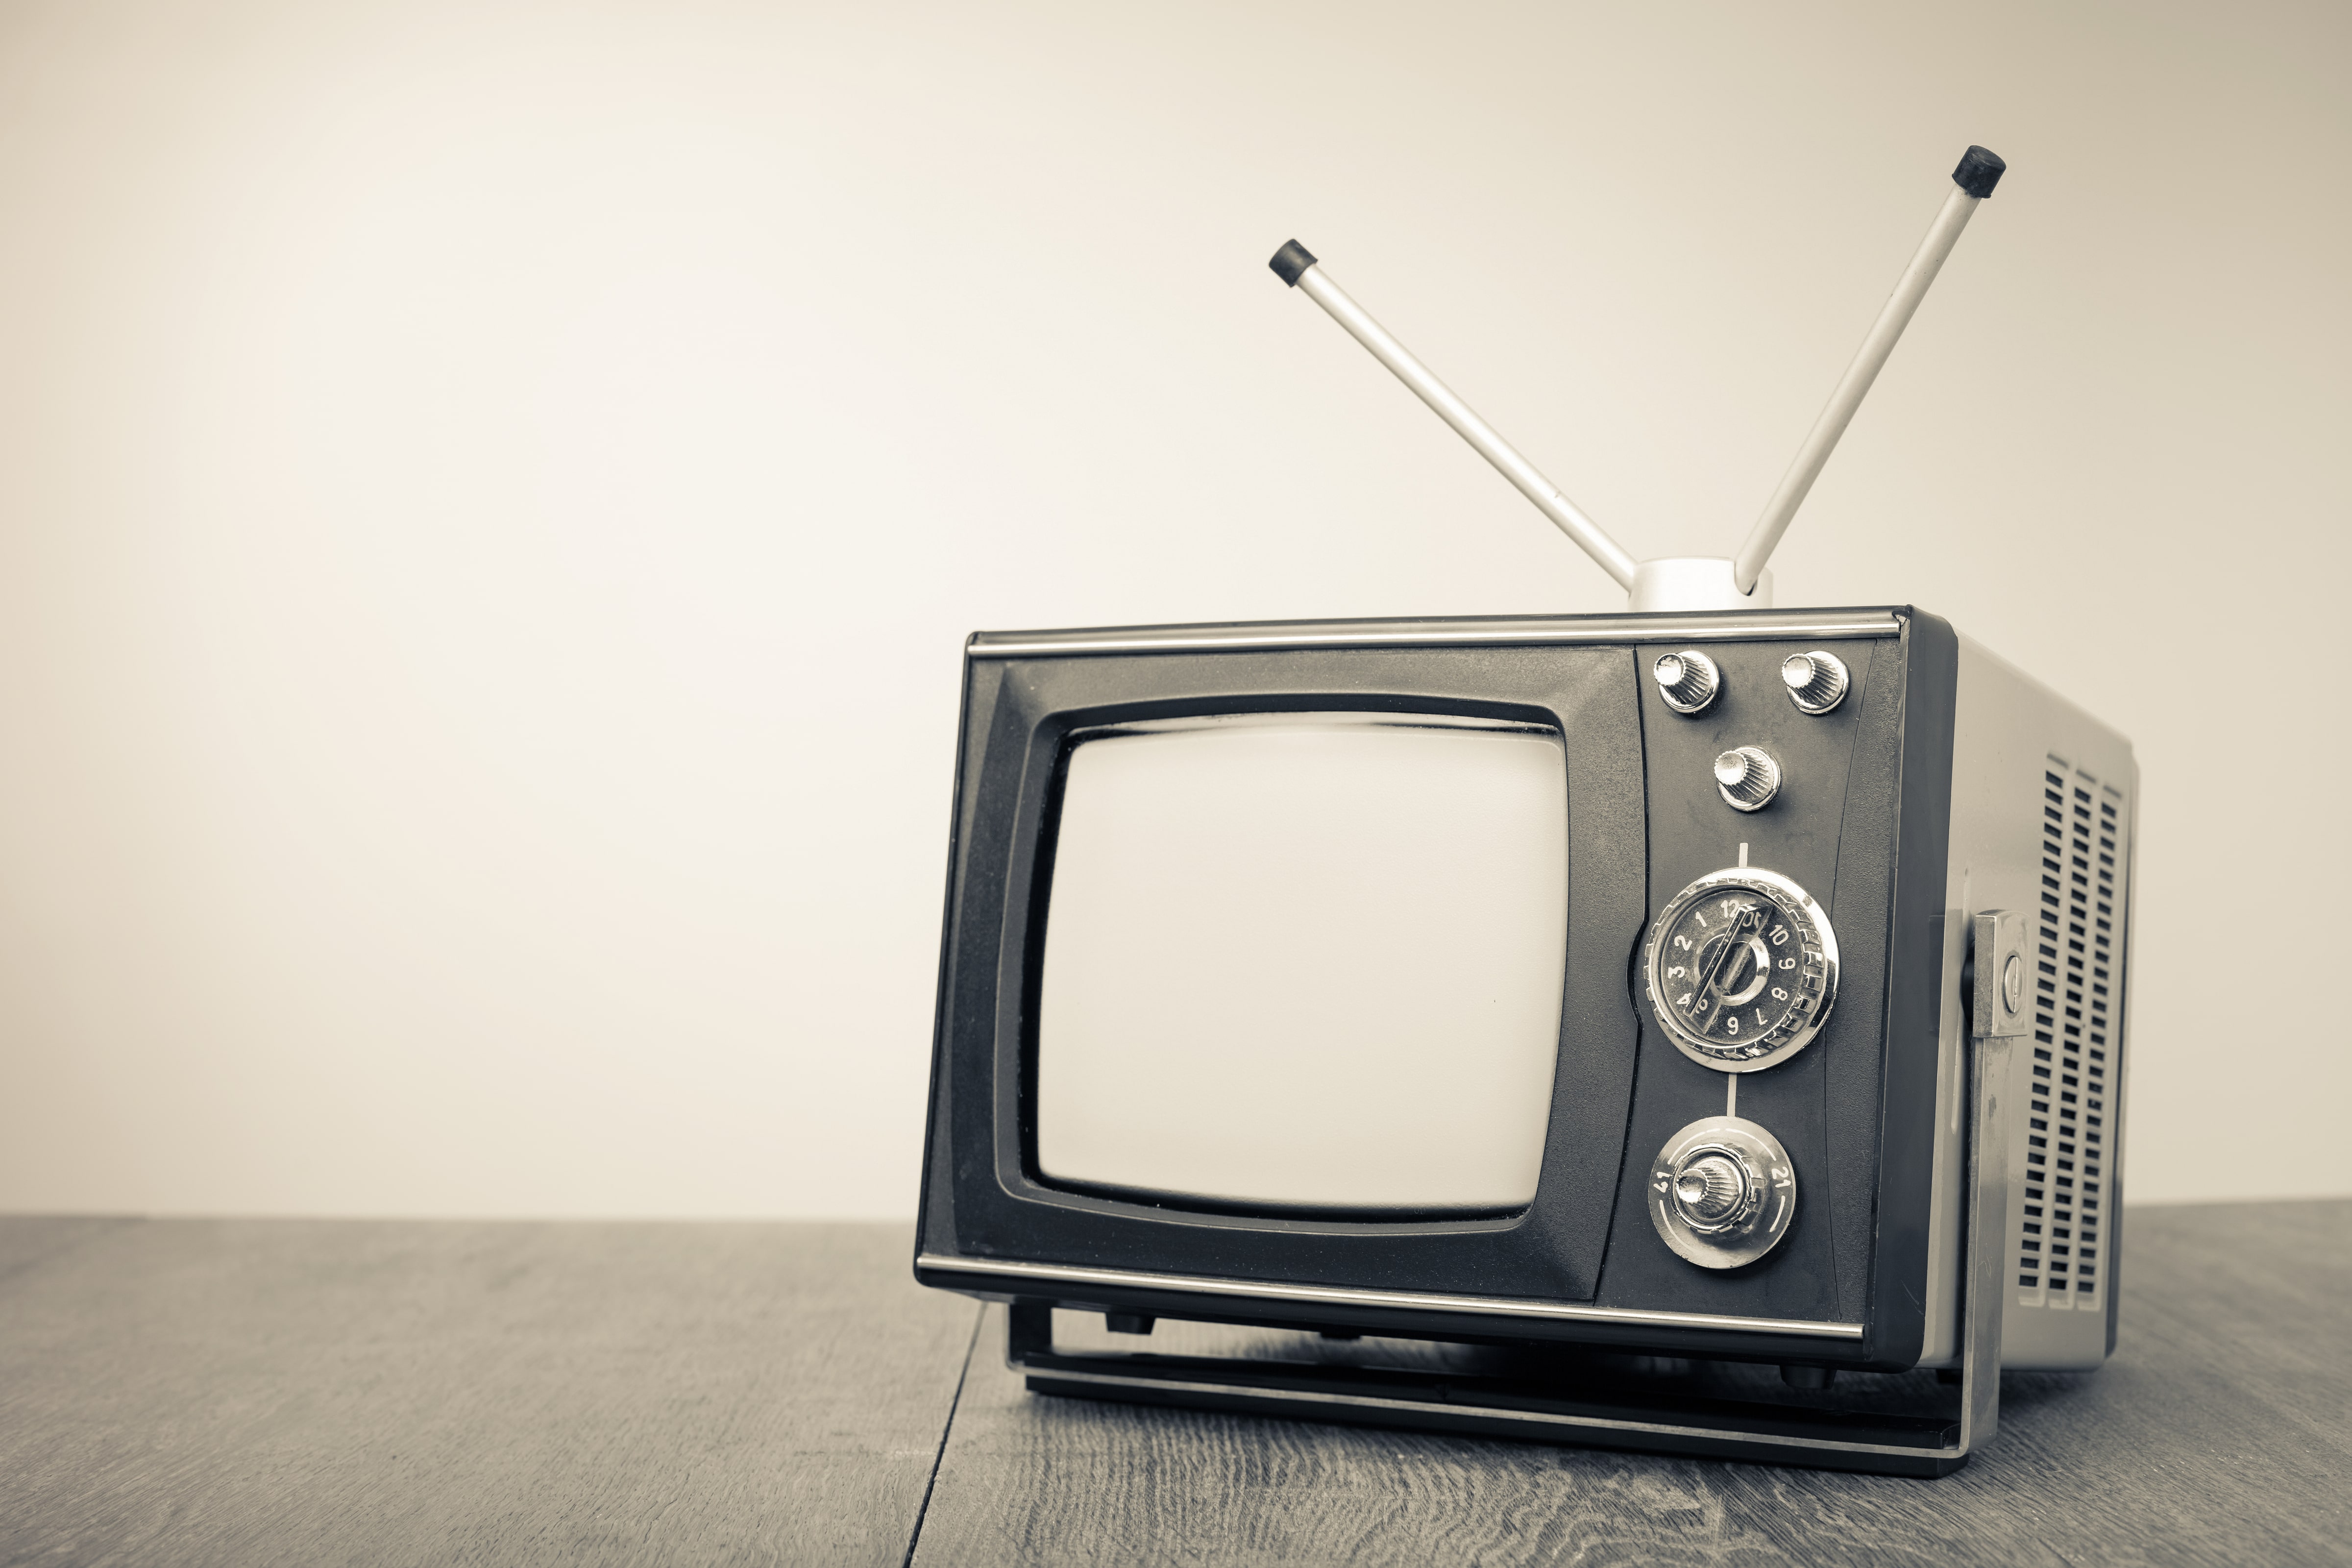 Σχεδόν 60 χρόνια πέρασαν από την πρώτη εκπομπή τηλεοπτικού σήματος στην Ελλάδα!